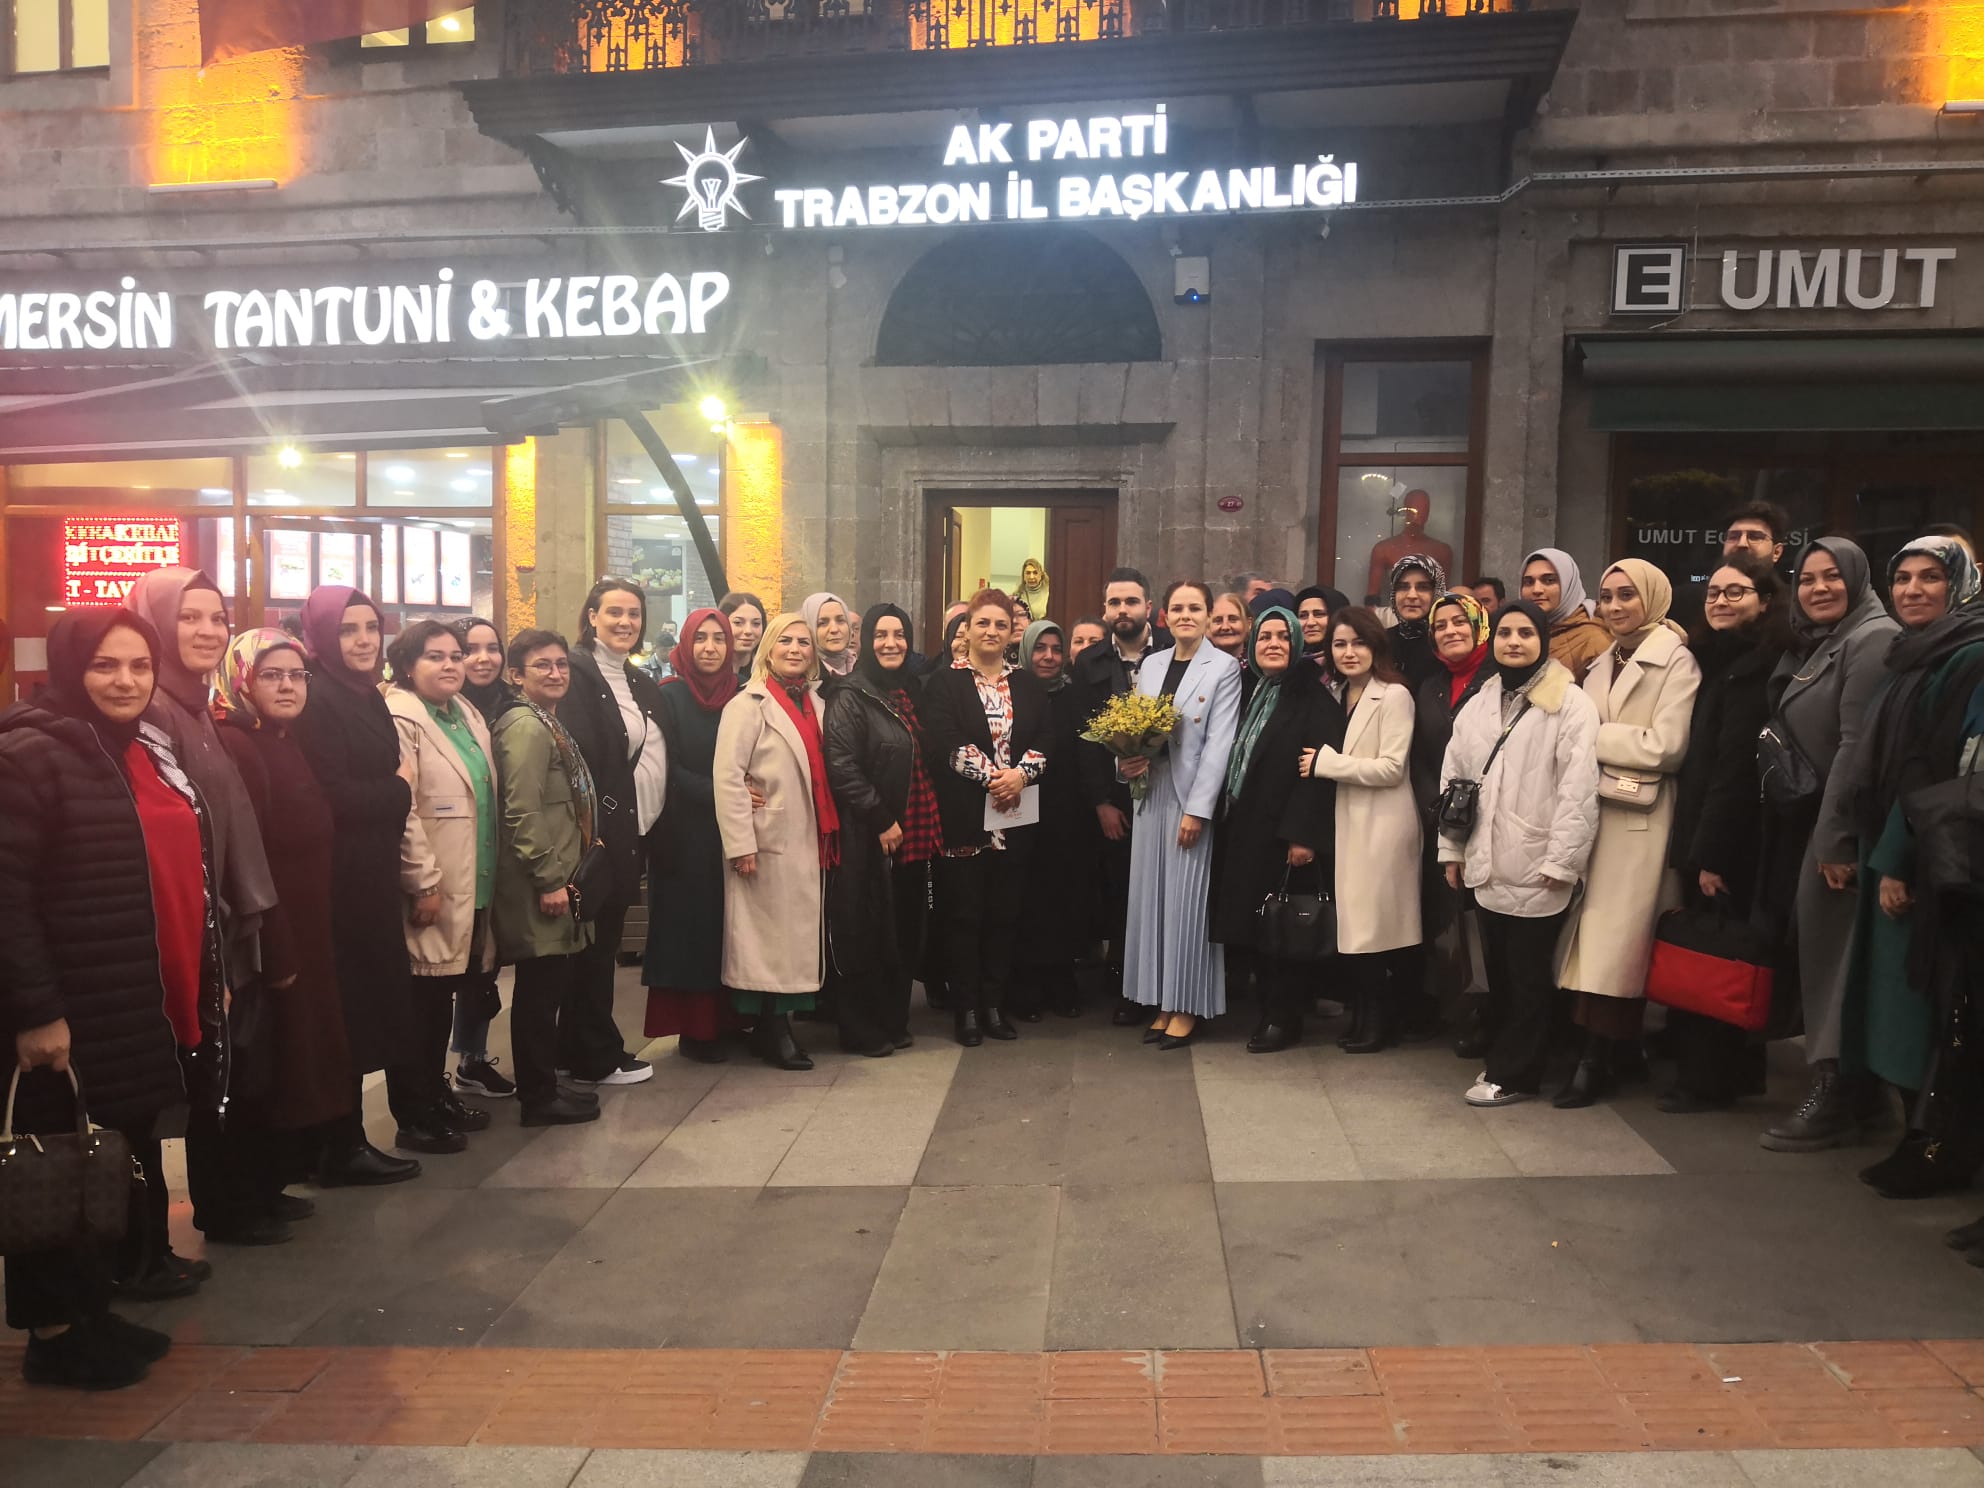 Trabzon AK Parti Kadın Kolları Başkanı Meryem Sürmen milletvekili aday adaylığını açıkladı